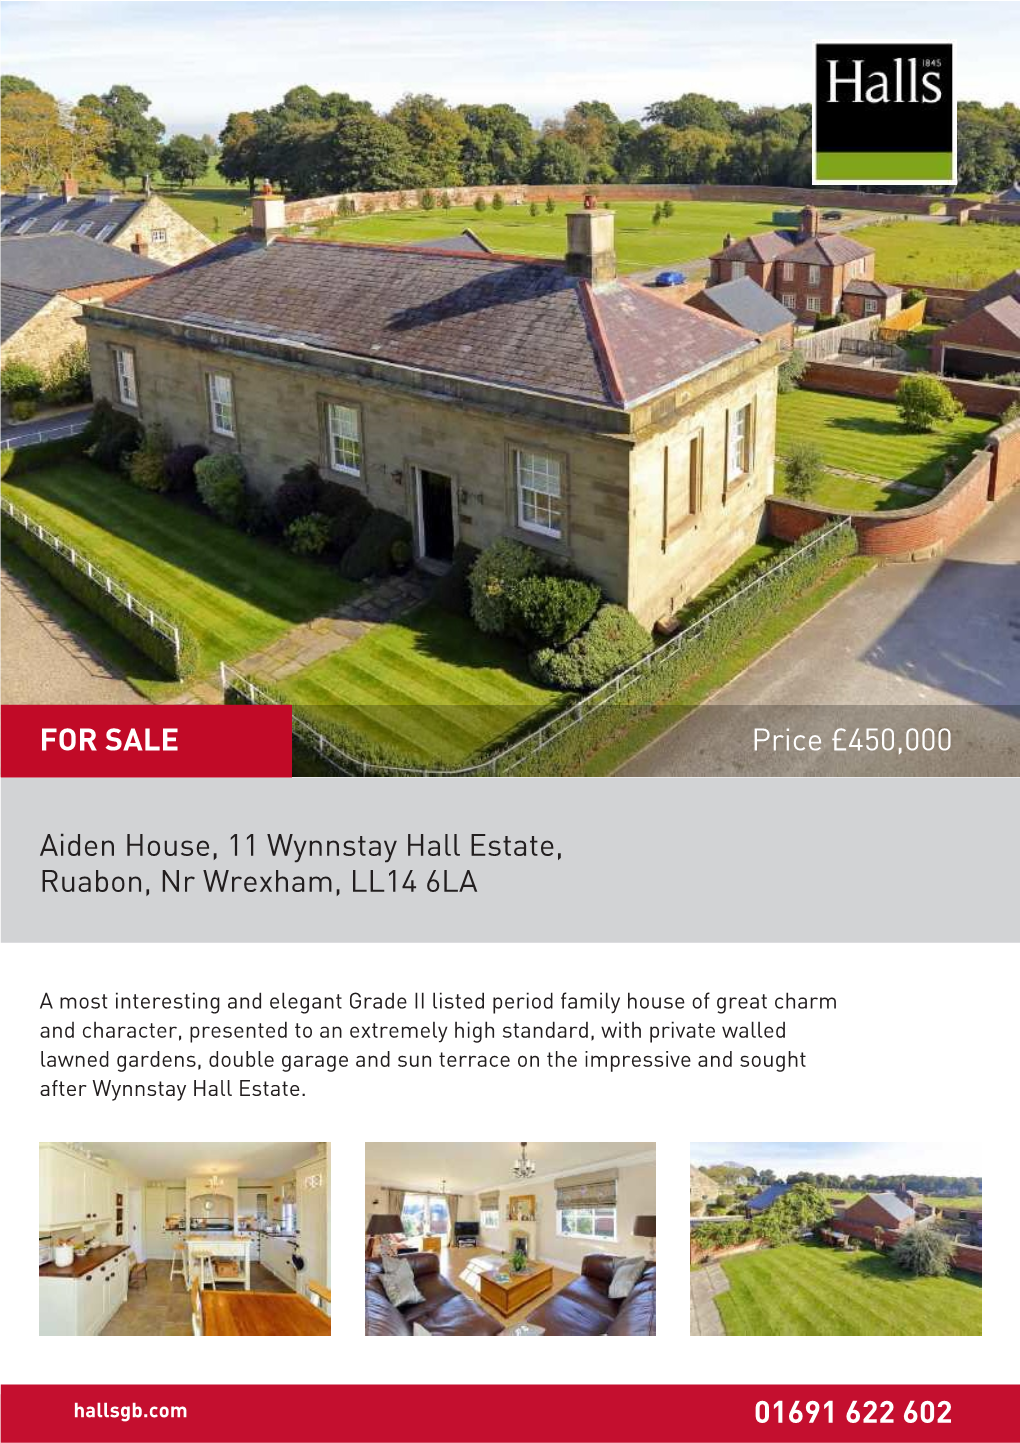 Aiden House, 11 Wynnstay Hall Estate, Ruabon, Nr Wrexham, LL14 6LA 01691 622 602 Price £450,000 for SALE